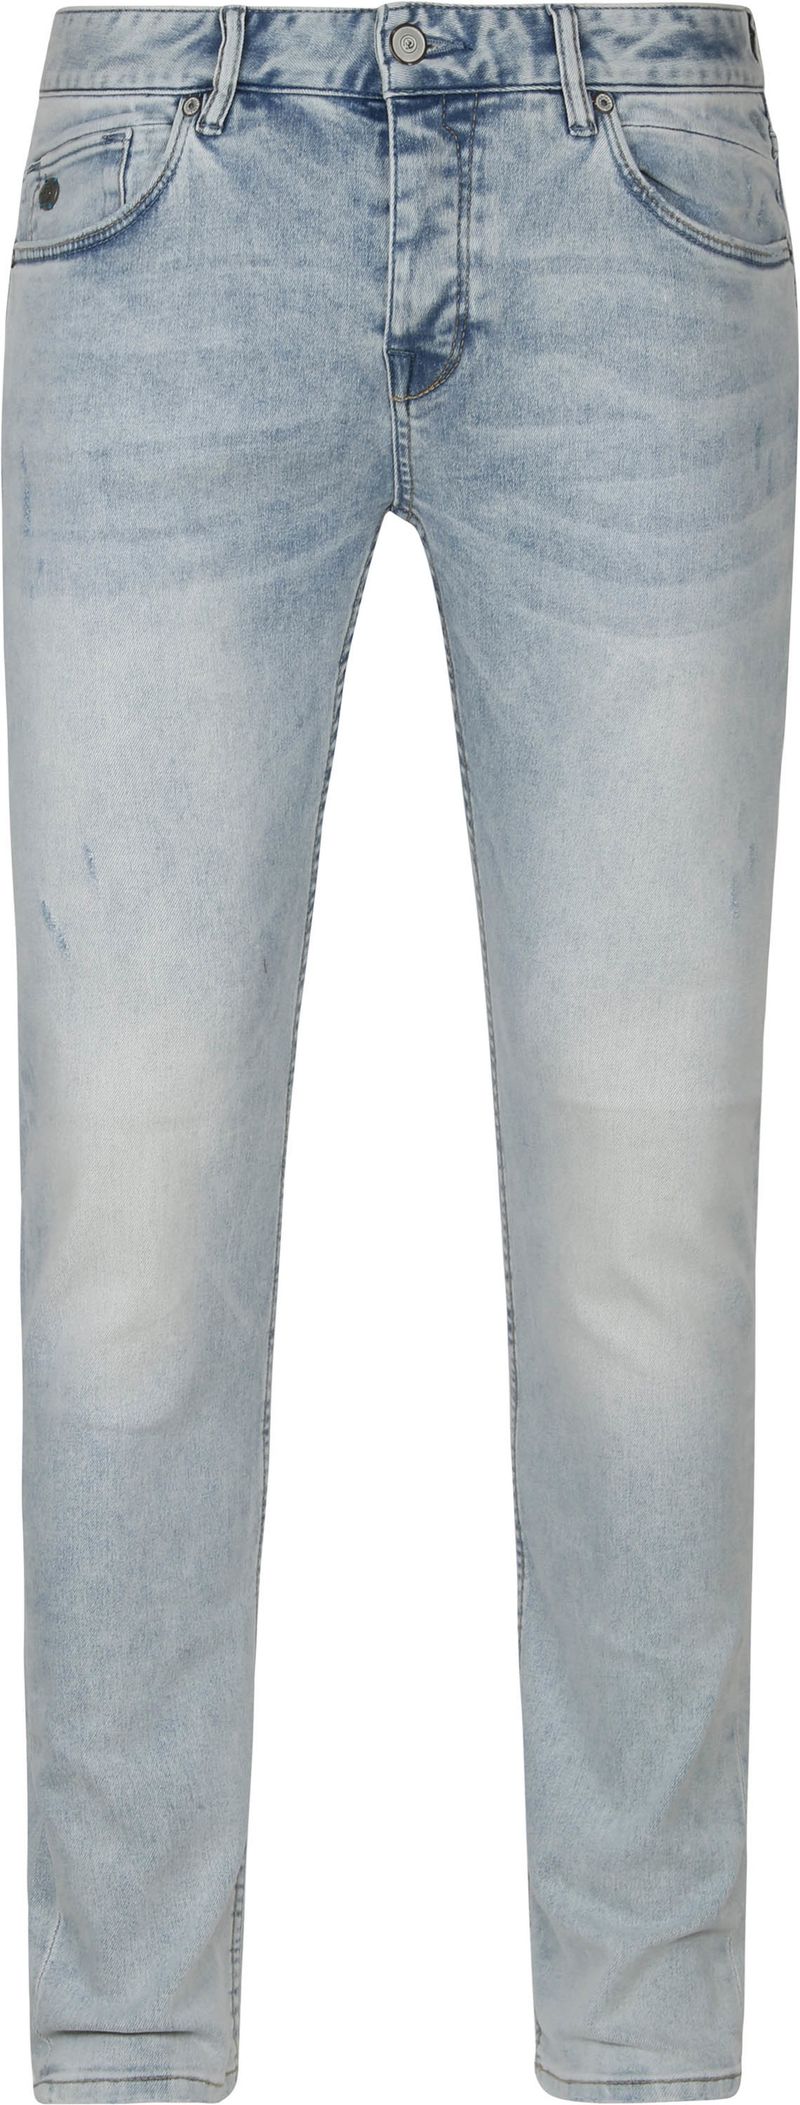 Cast Iron Riser Jeans Hellgrau Bright Wash - Größe W 30 - L 34 von Cast Iron